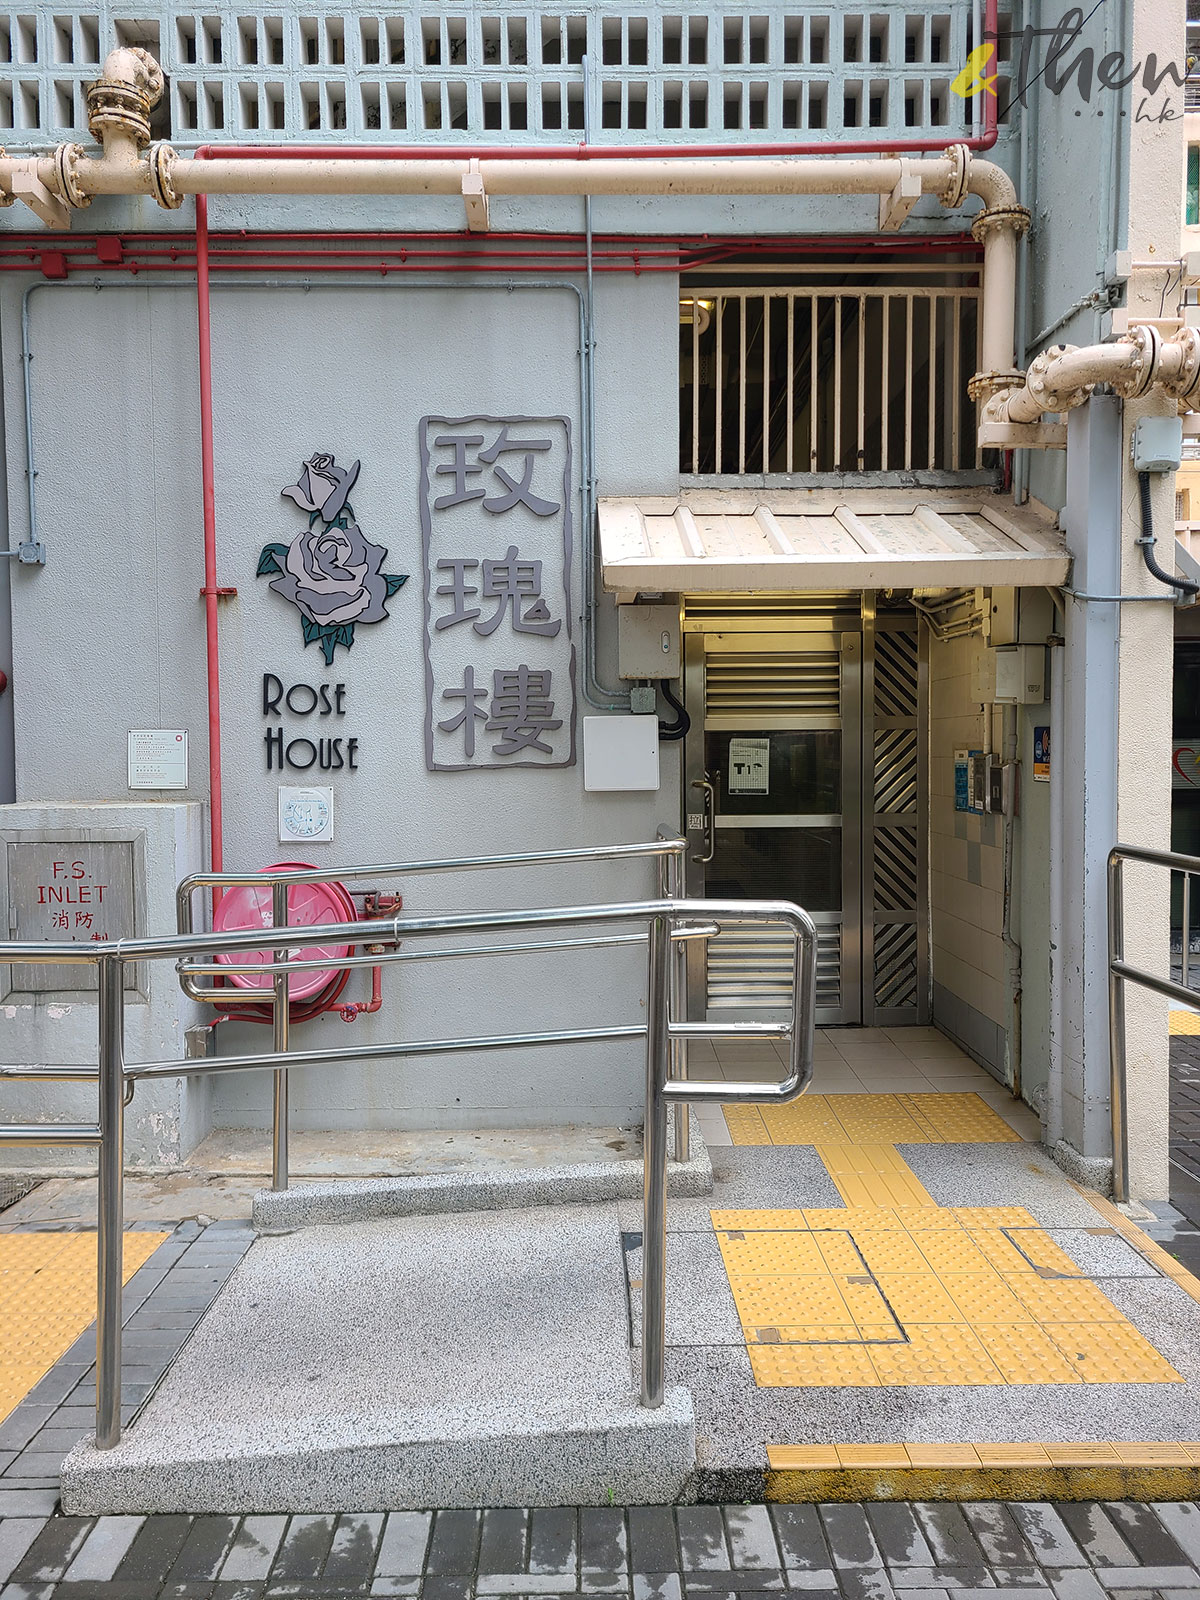 公營房屋 公屋重建 香港人 香港回憶 集體回憶 特色建築 建築 馬頭圍邨 樓宇名 玫瑰樓